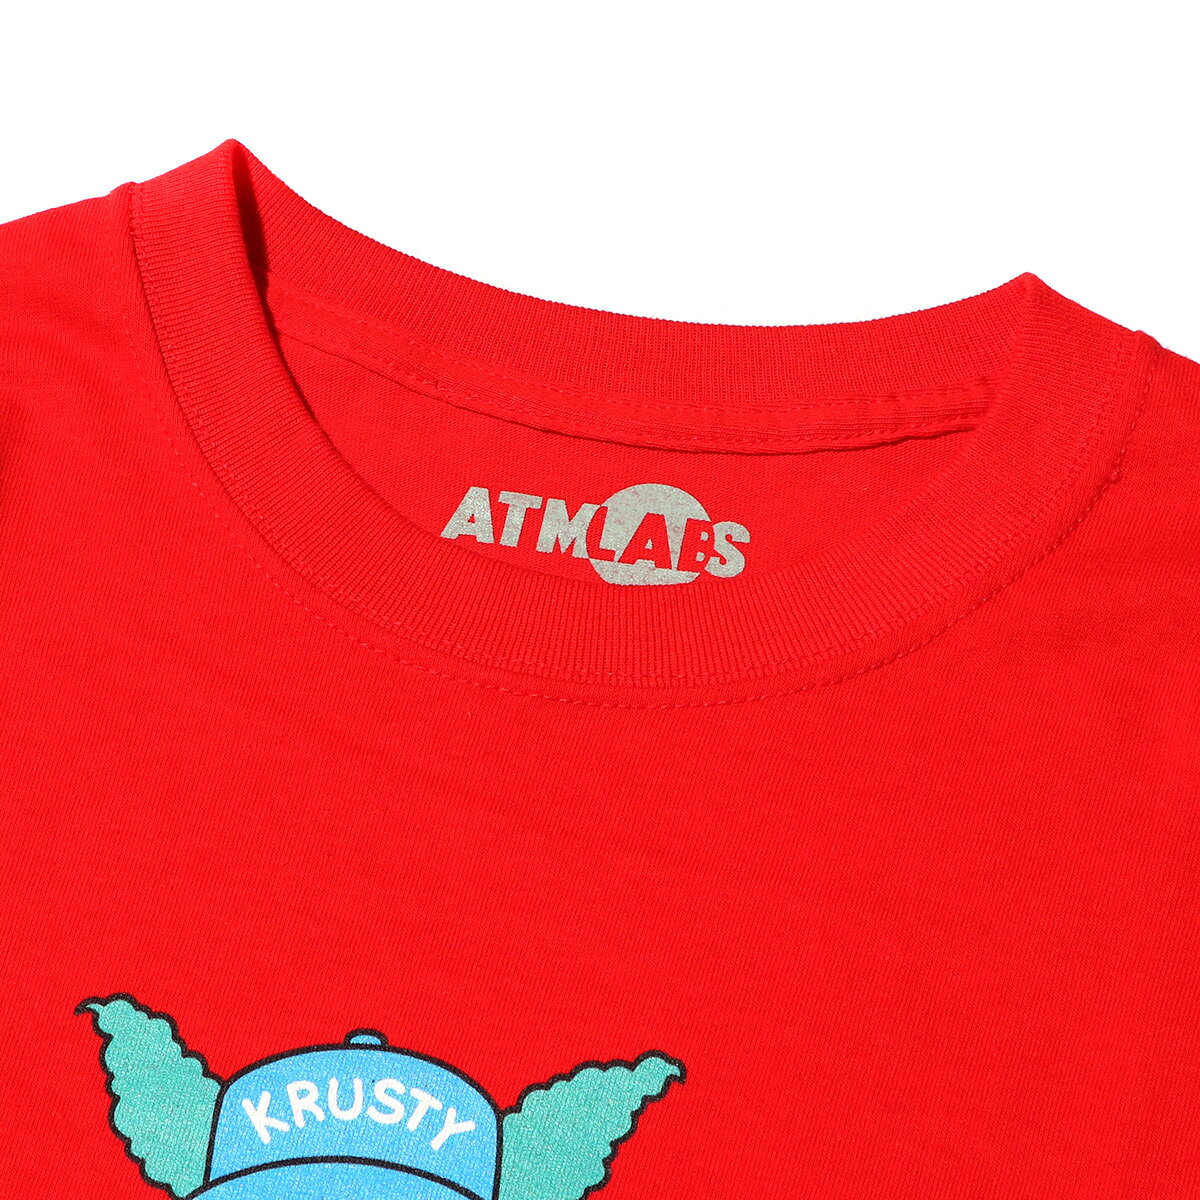 THE SIMPSONS x ATMOS LAB BART TEE (ザシンプソンズ アトモスラボ バート ティ) RED【メンズ Tシャツ】18SS-S